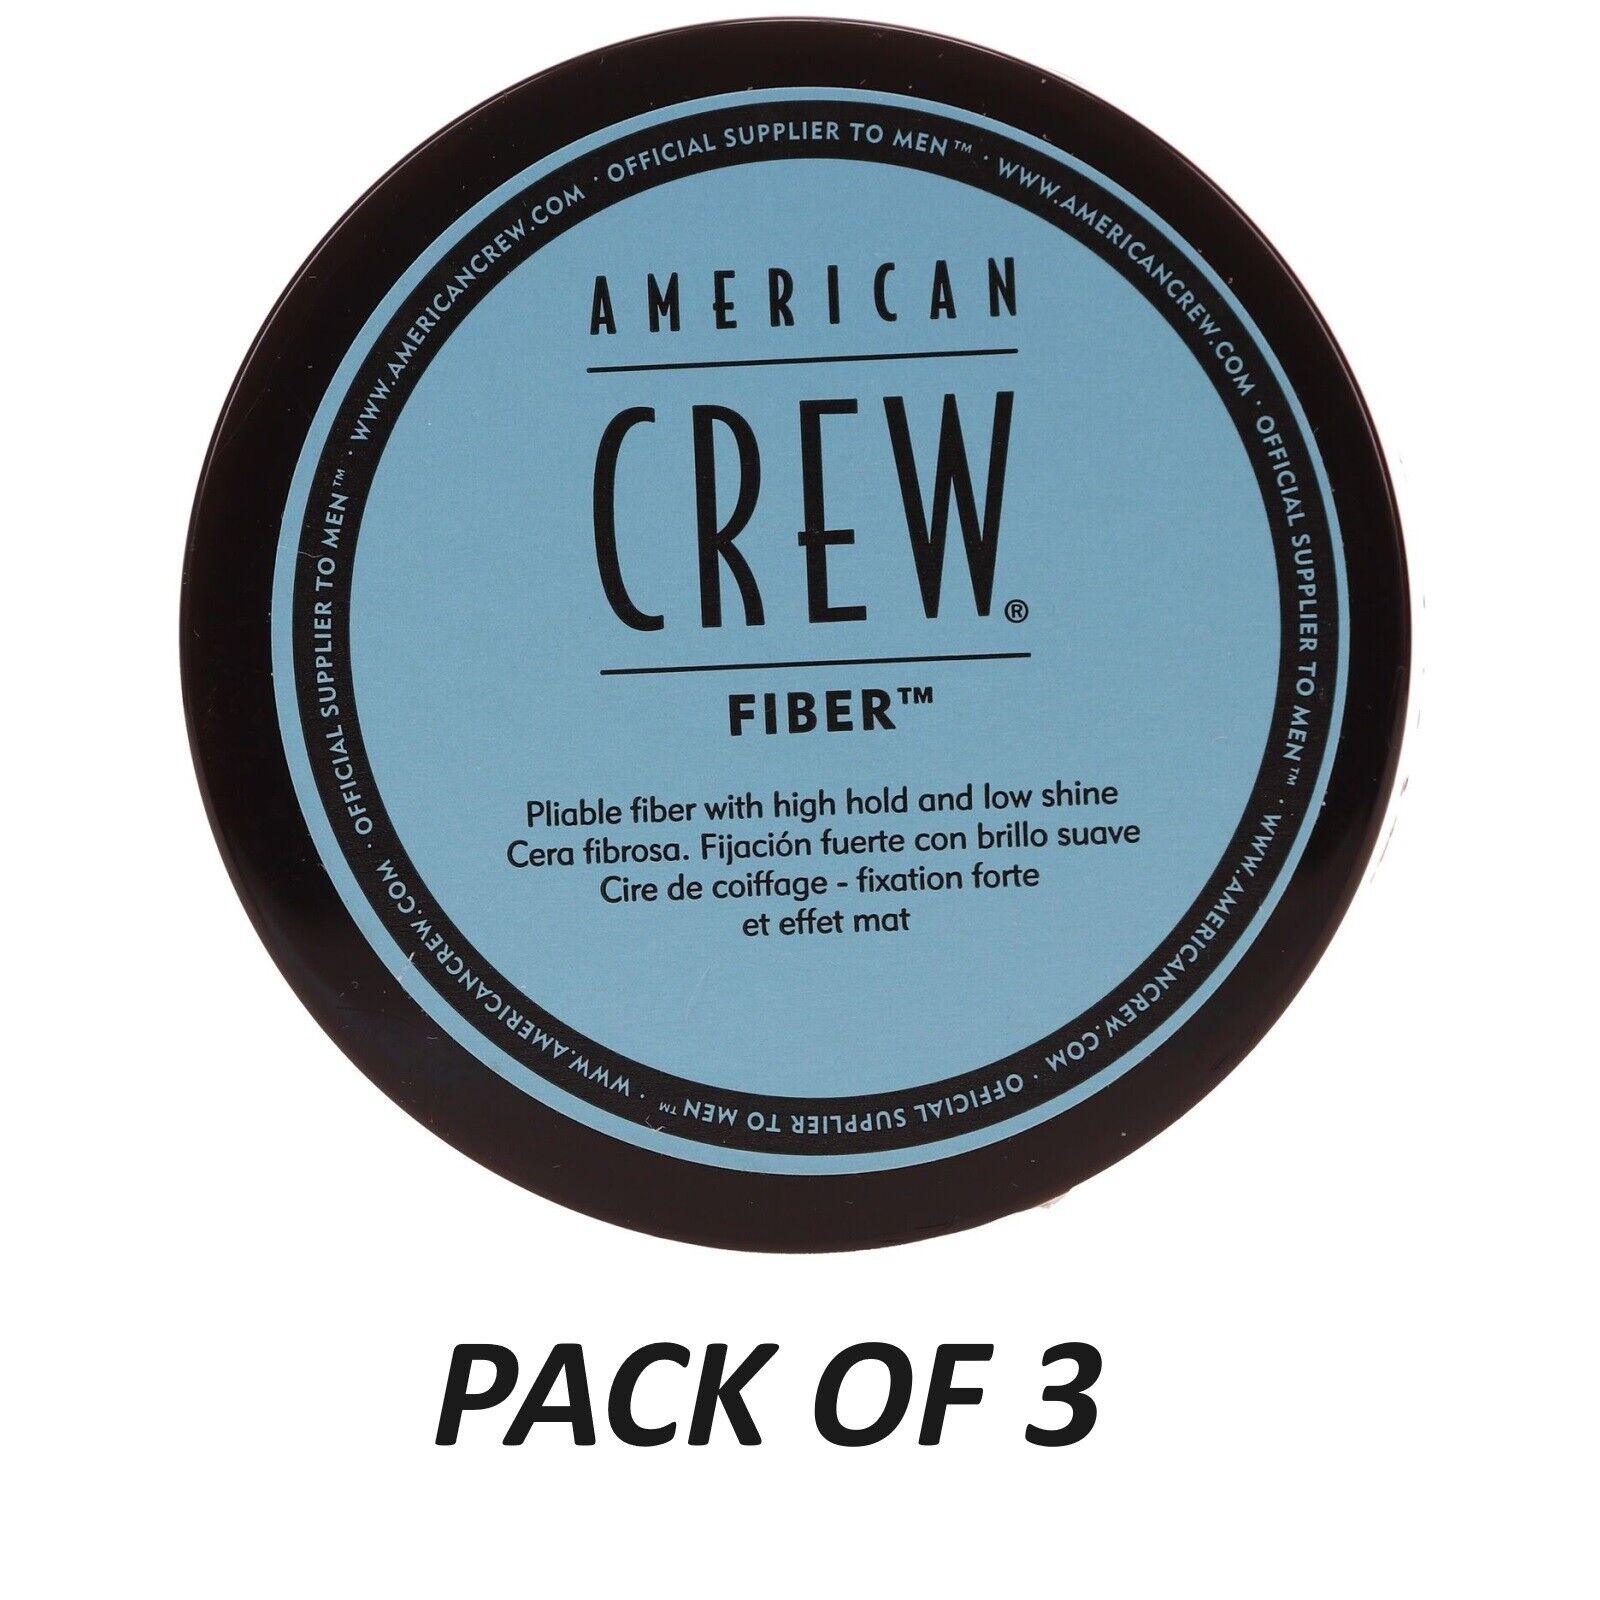 American Crew FIBER 3 oz. - PACK OF 3